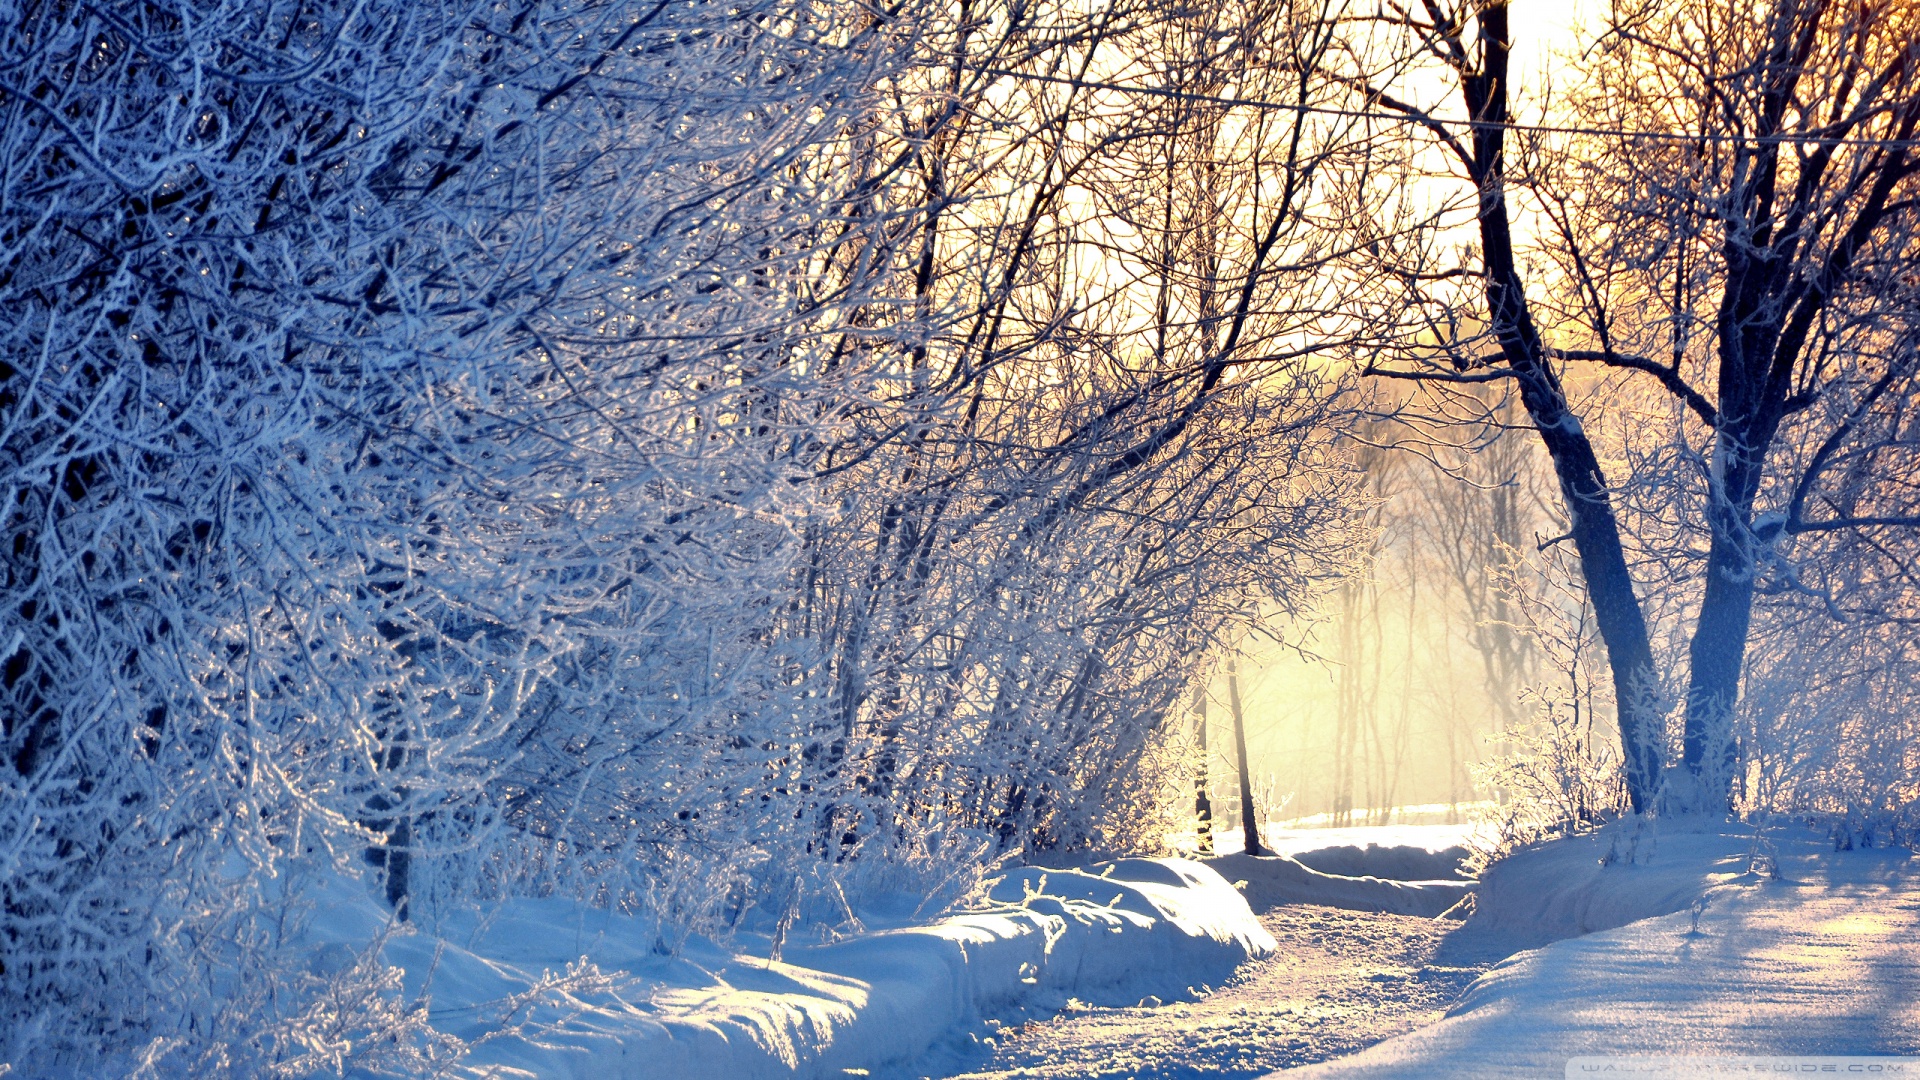 Winter Sun by Steelscreen on DeviantArt